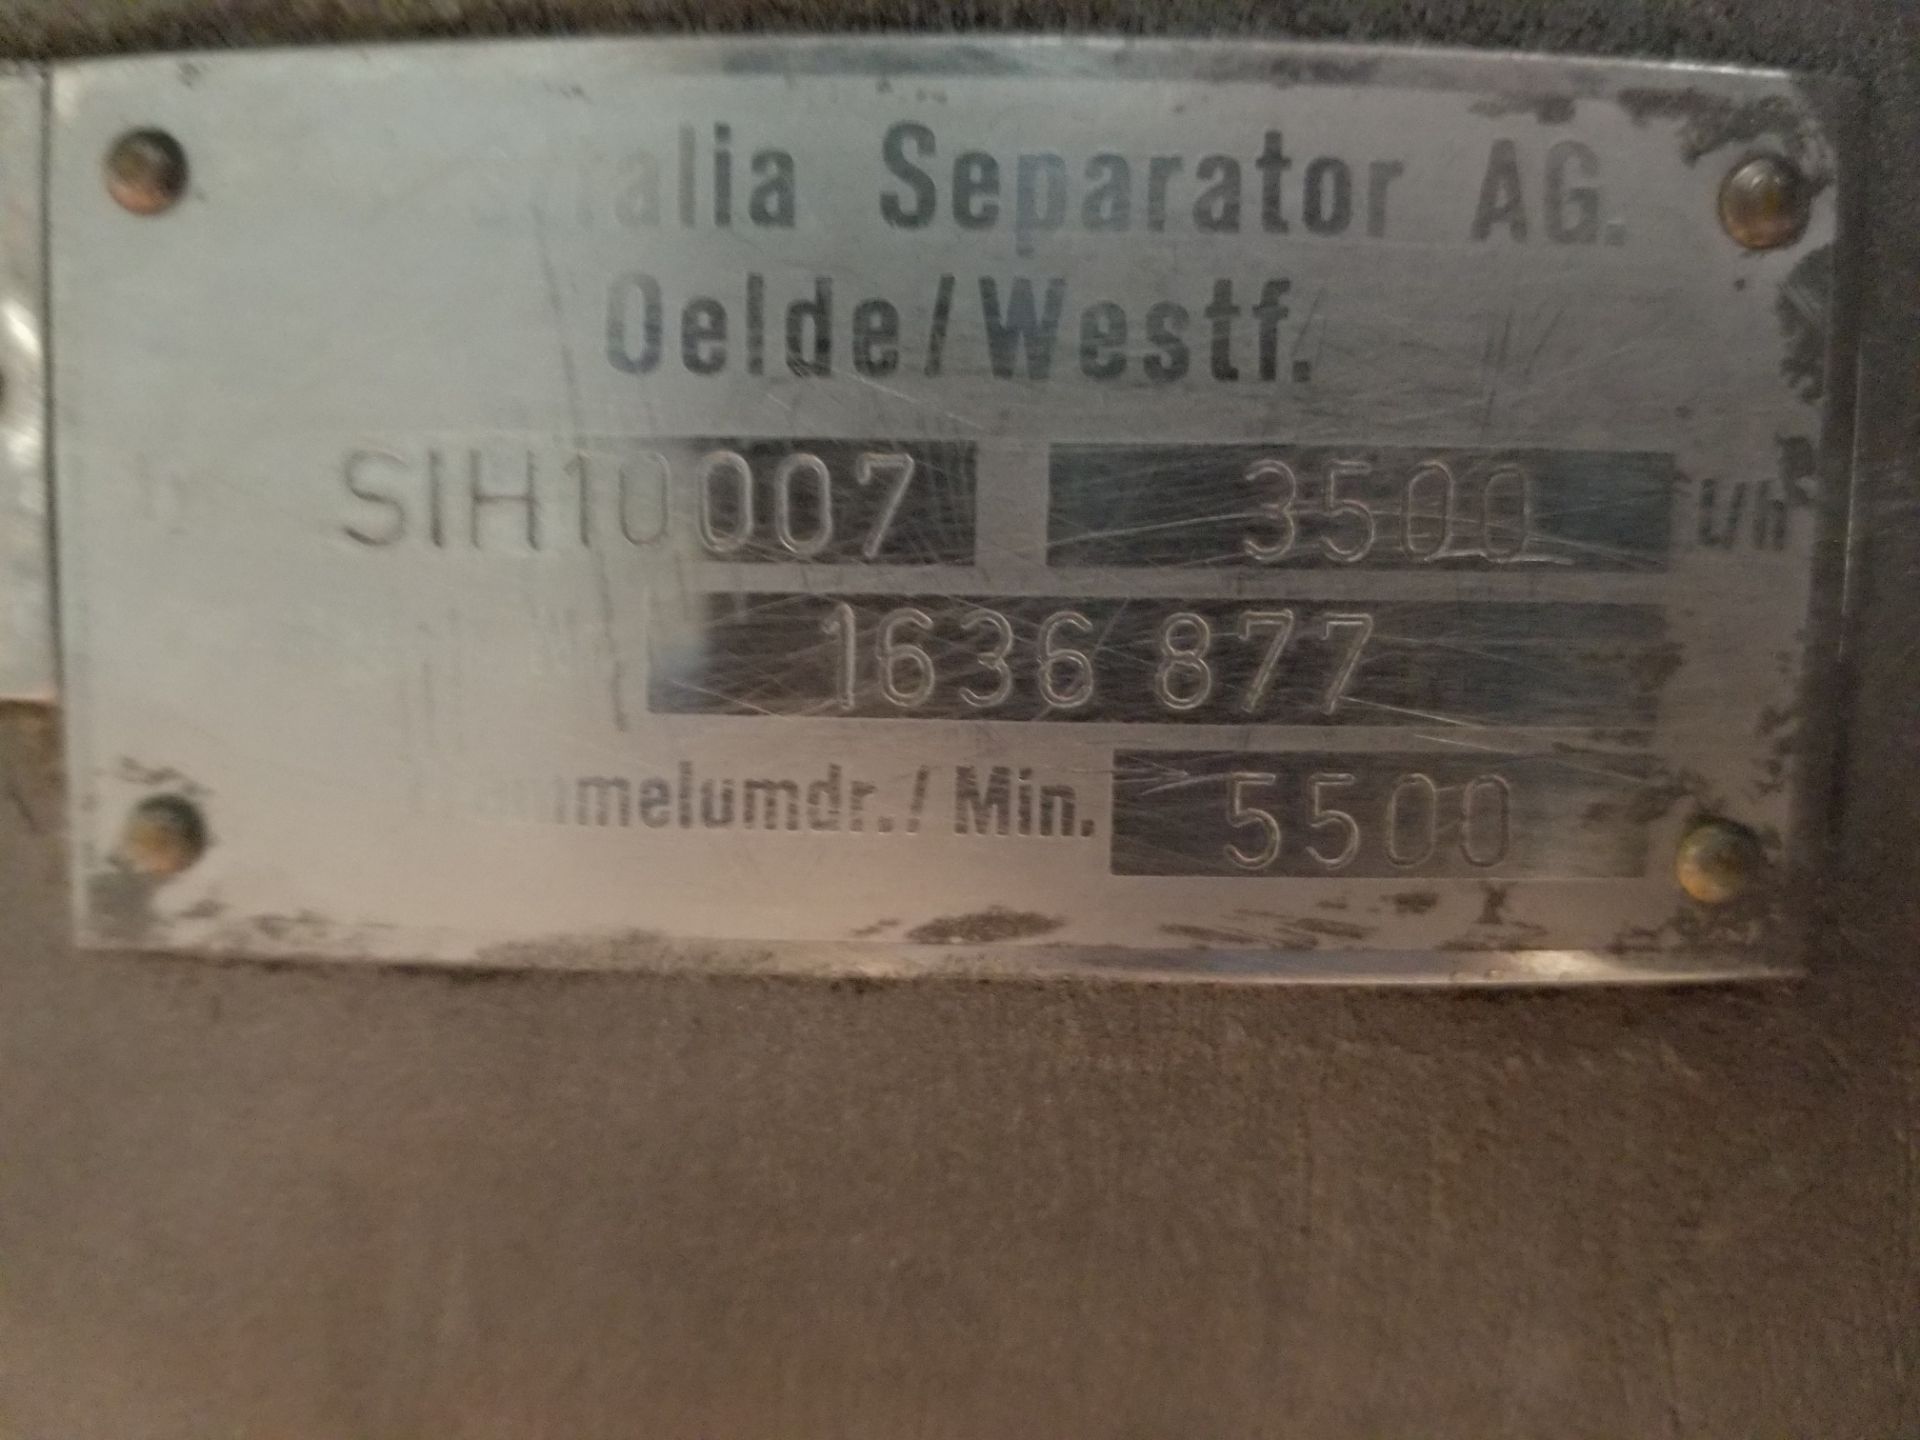 Westfalia Separator; Model: SIH 10007; Serial: 1636877; Capacity 3500 l/h (Loading Fee $1,500) ( - Image 3 of 3